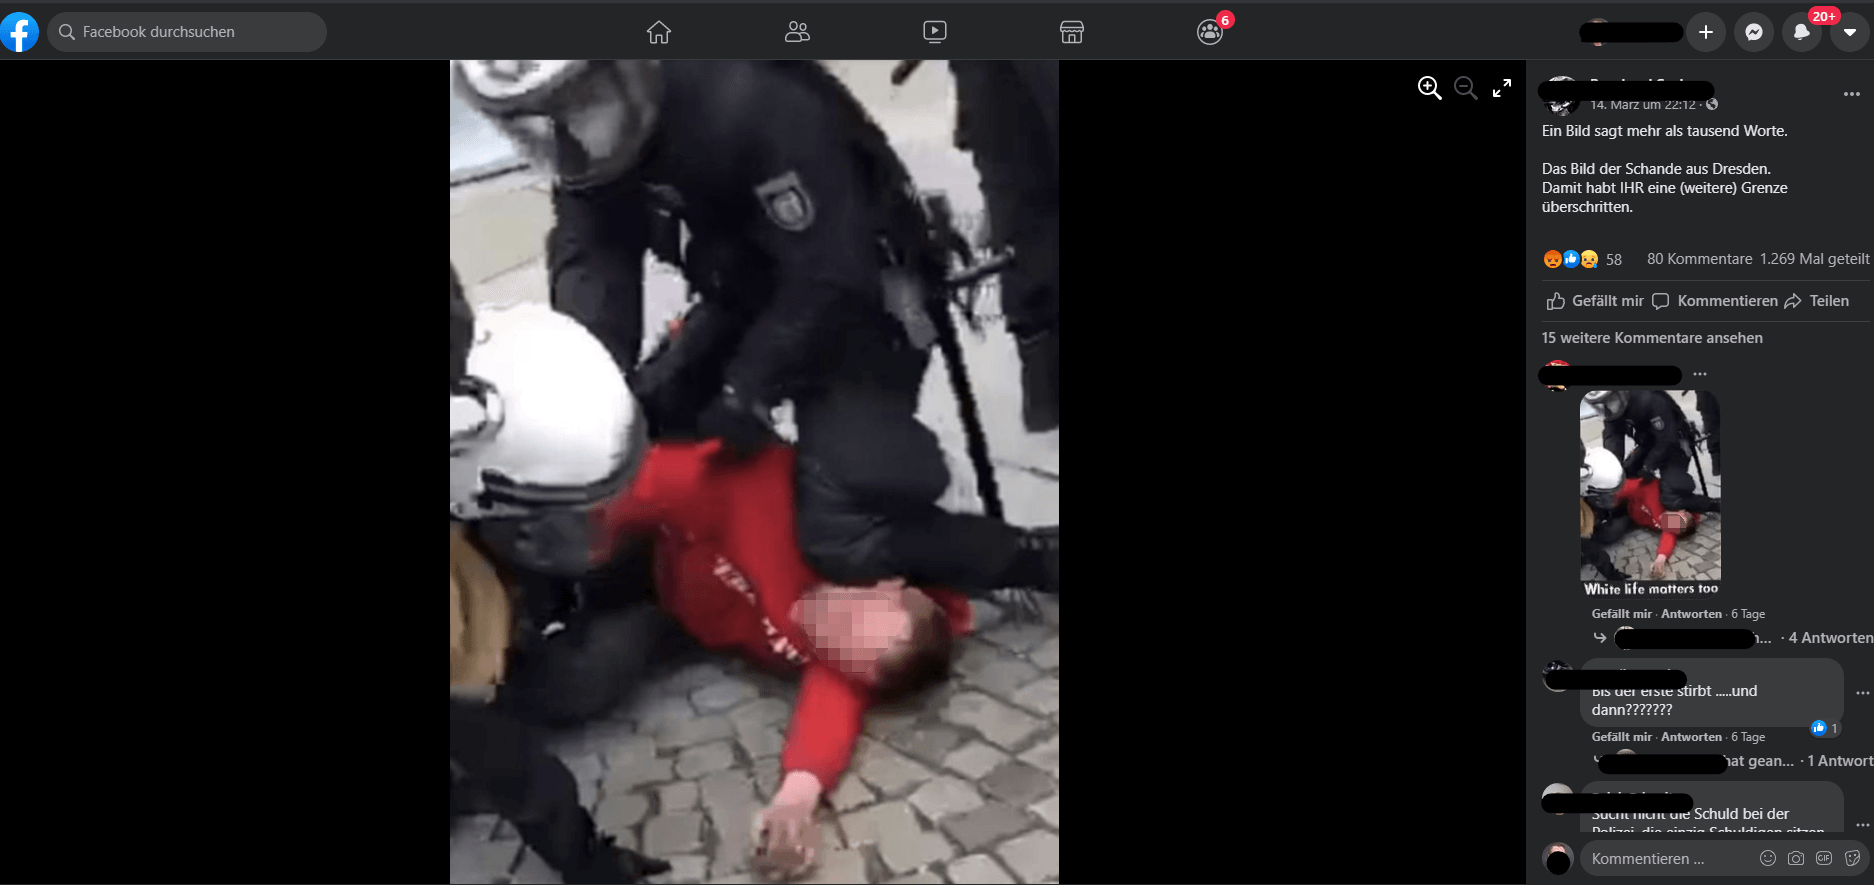 Das auf Facebook verbreitete Bild der Festnahme in Dresden